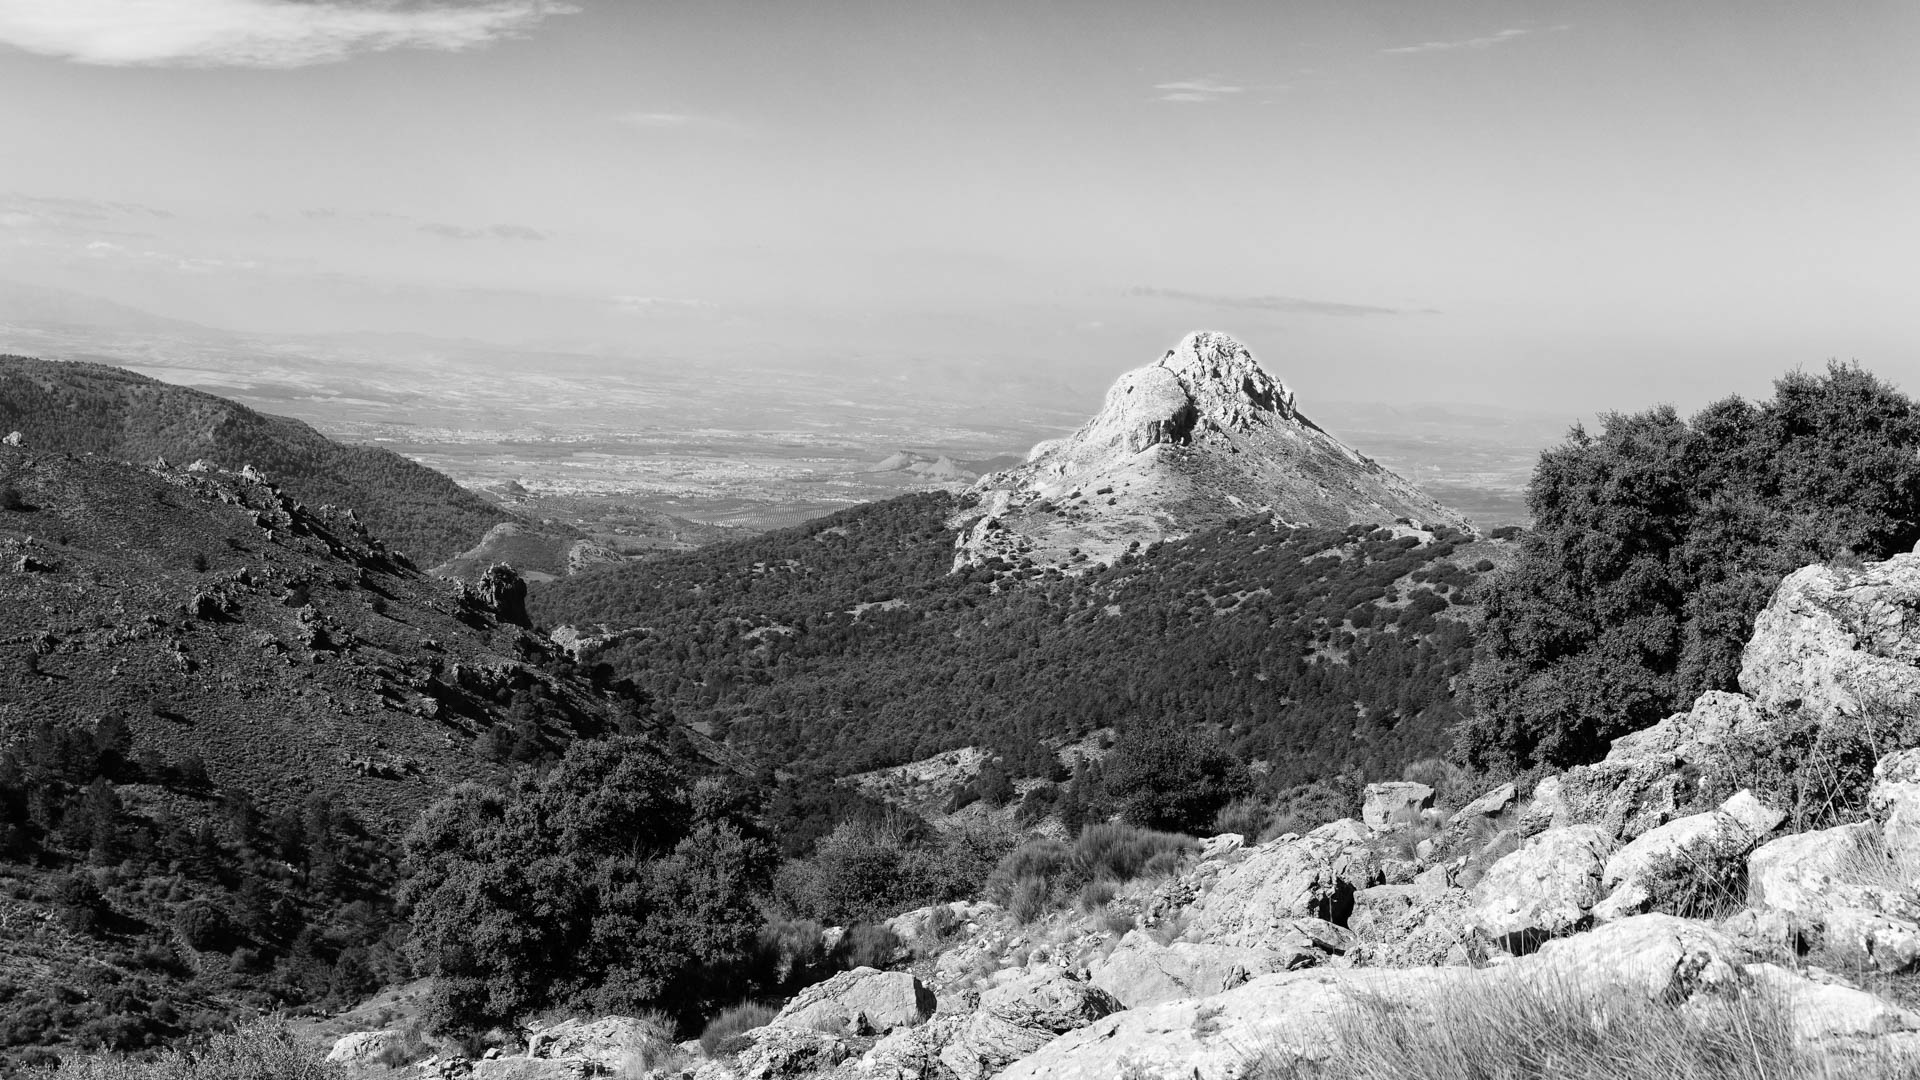 Sierra de Huetor in Black and White